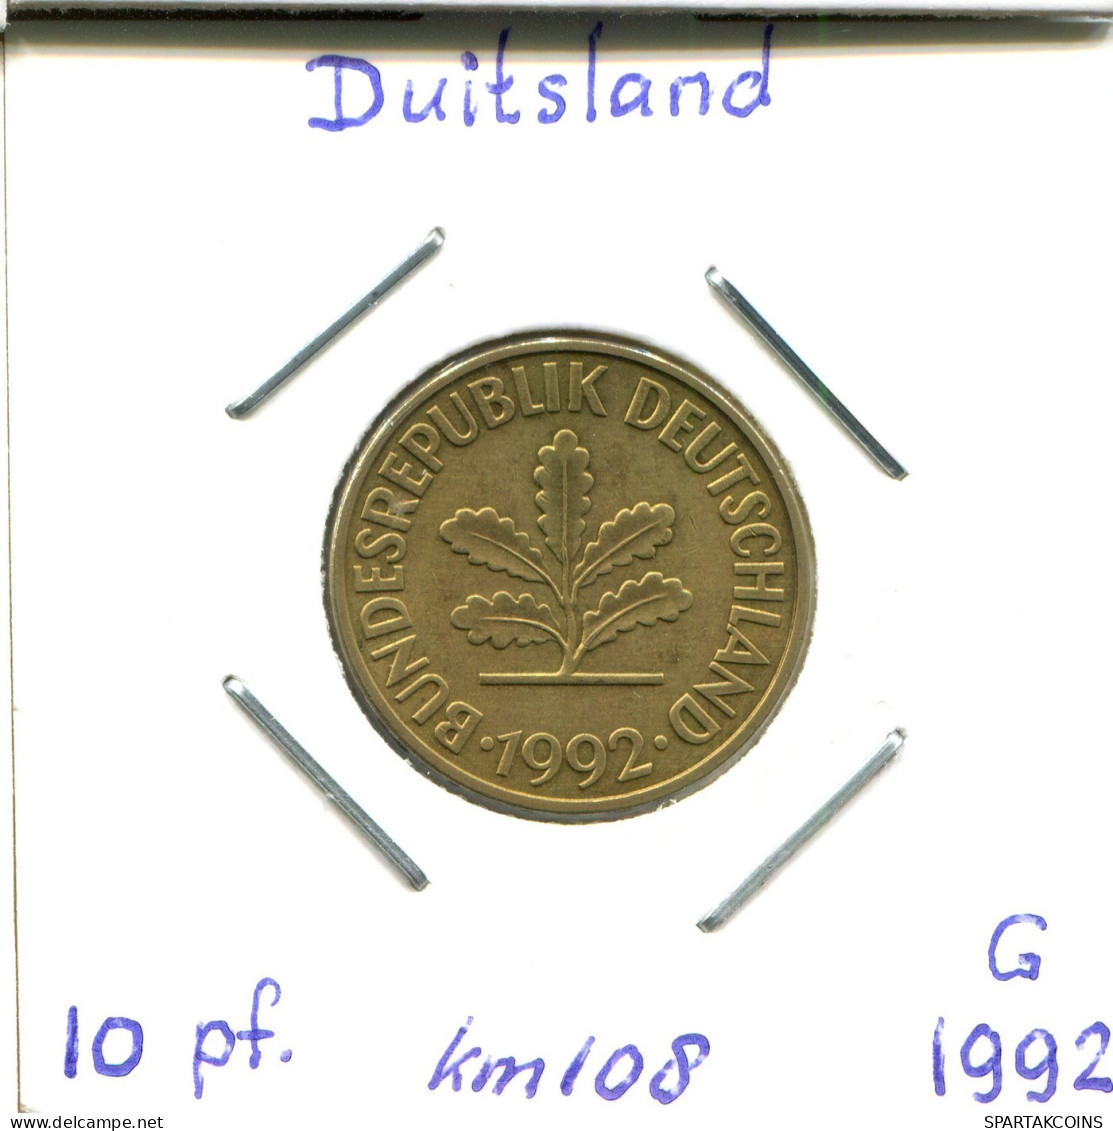 10 PFENNIG 1992 G BRD ALLEMAGNE Pièce GERMANY #DB484.F.A - 10 Pfennig